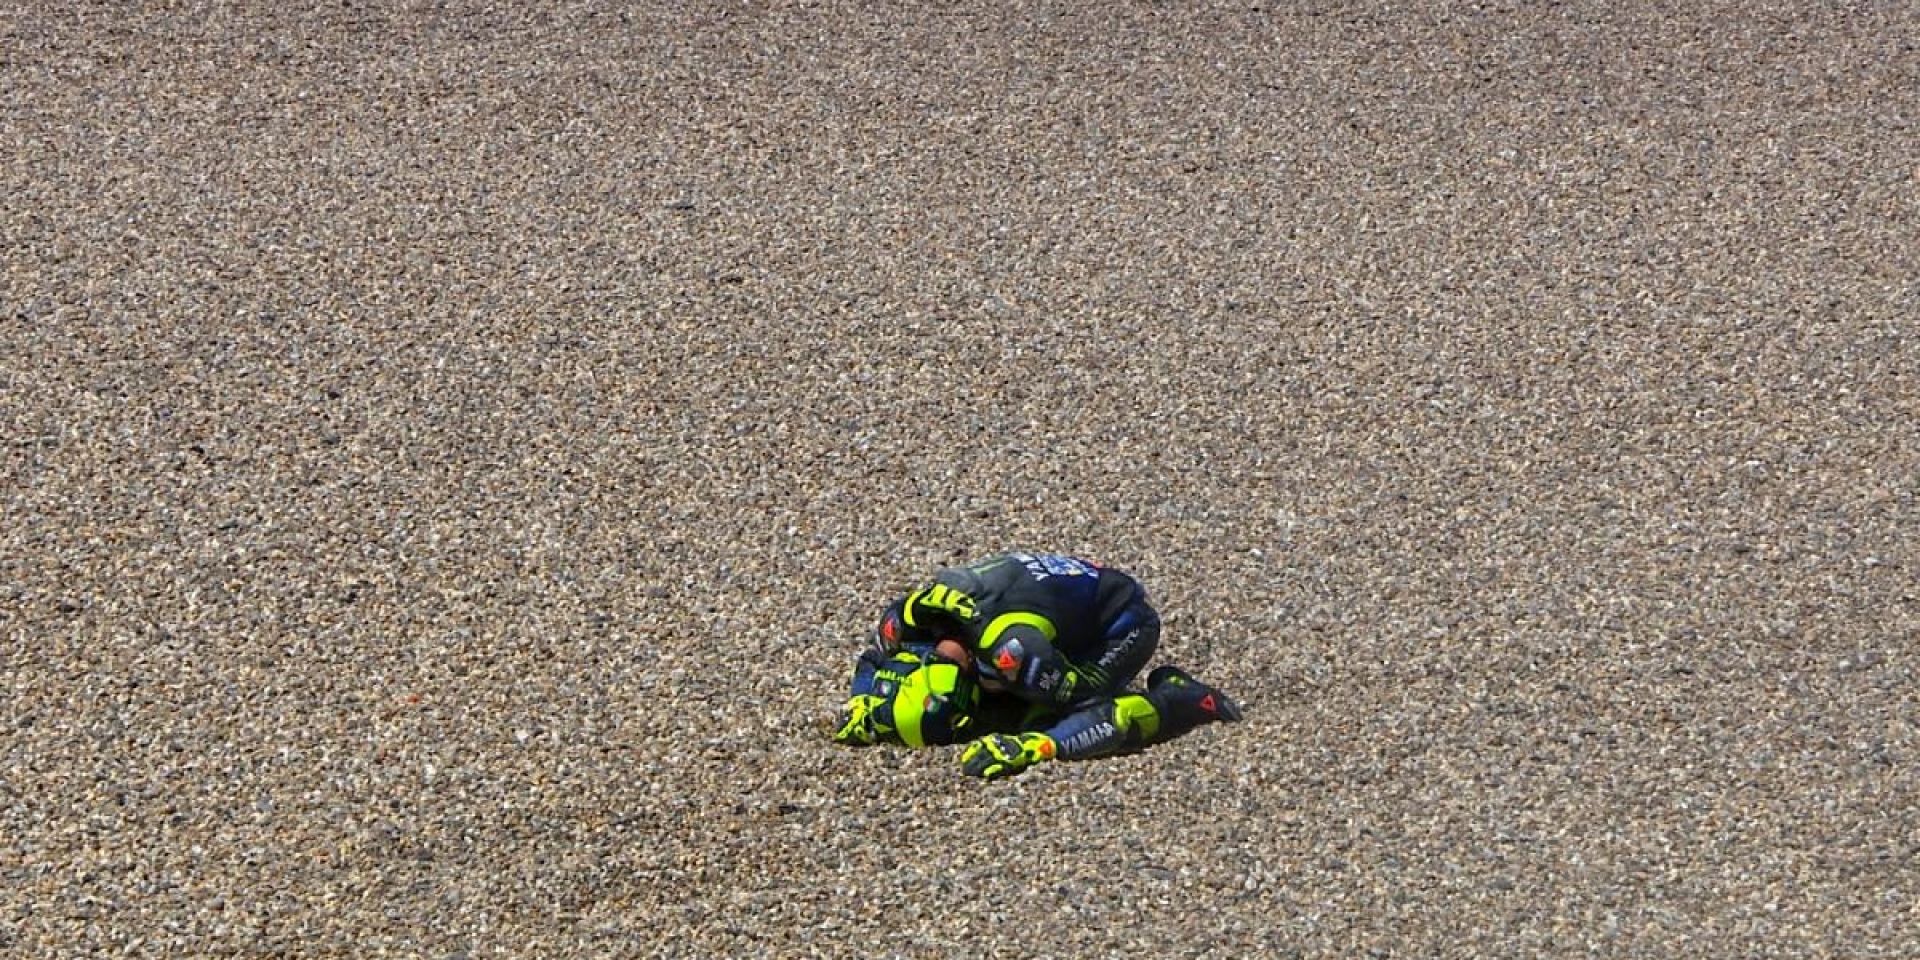 連三摔三，沒辦法醒的夢魘。Valentino Rossi：對不起，這是我的失誤！